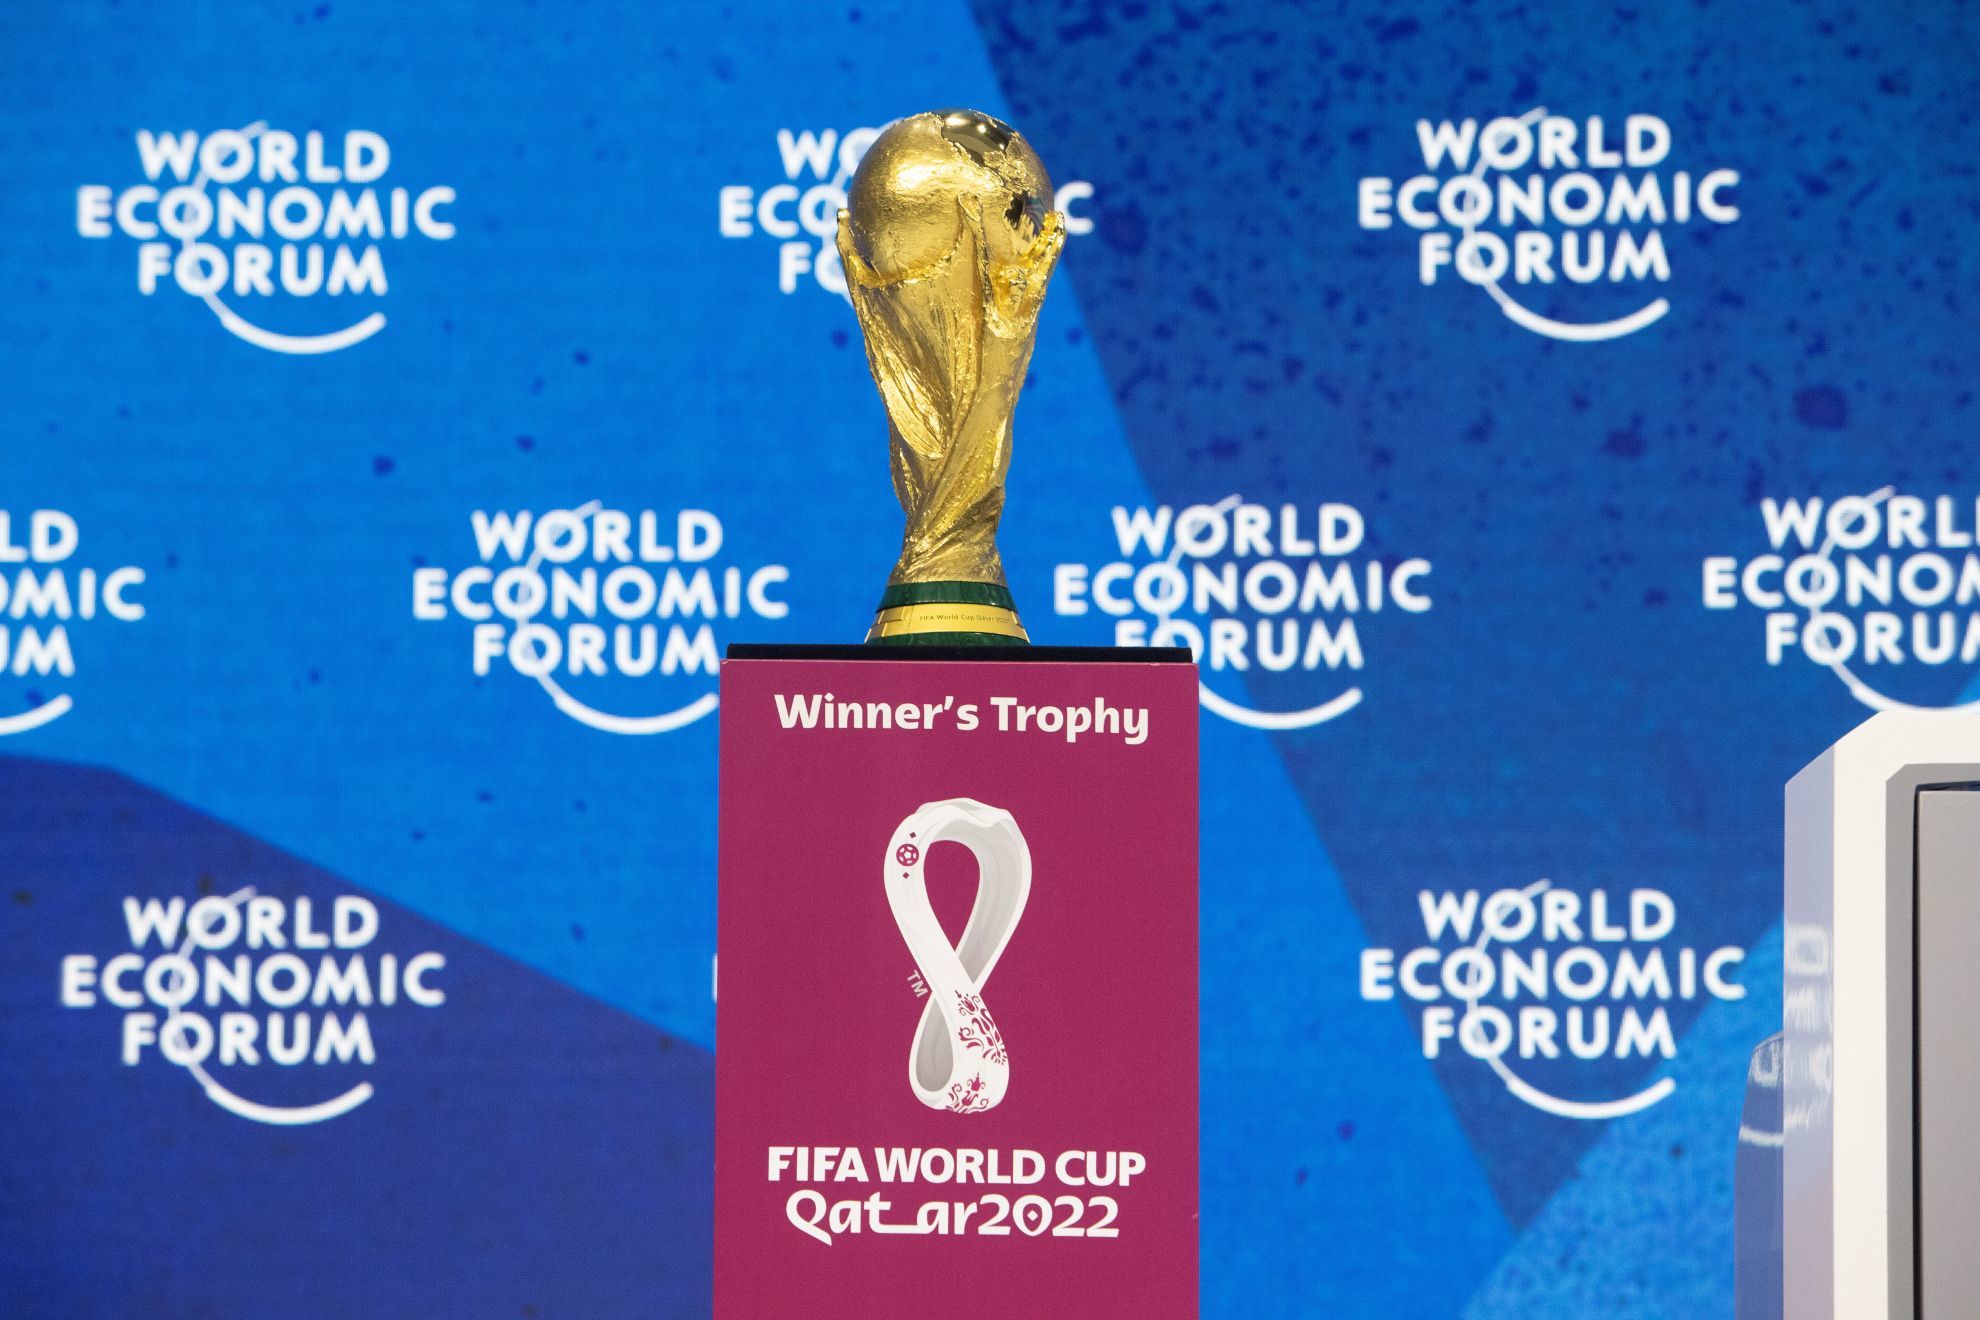 Así llegan las selecciones clasificadas al Mundial de Qatar 2022, según el ranking de FIFA | Reuters